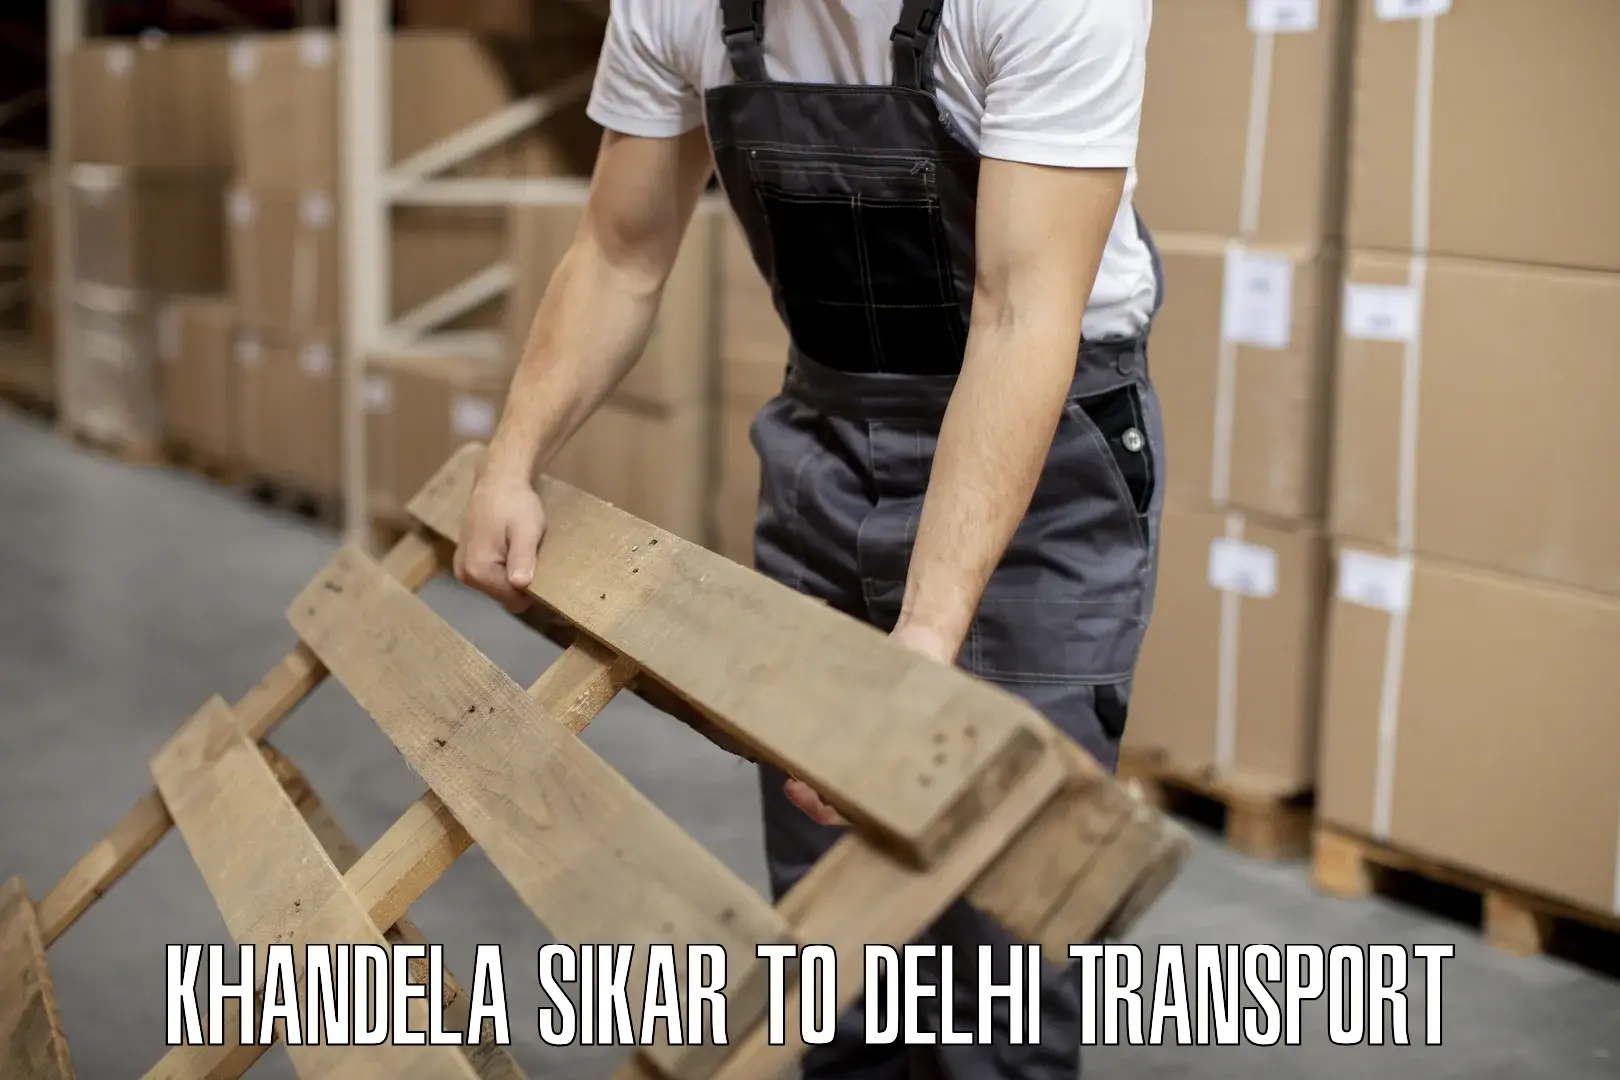 Interstate transport services Khandela Sikar to NIT Delhi